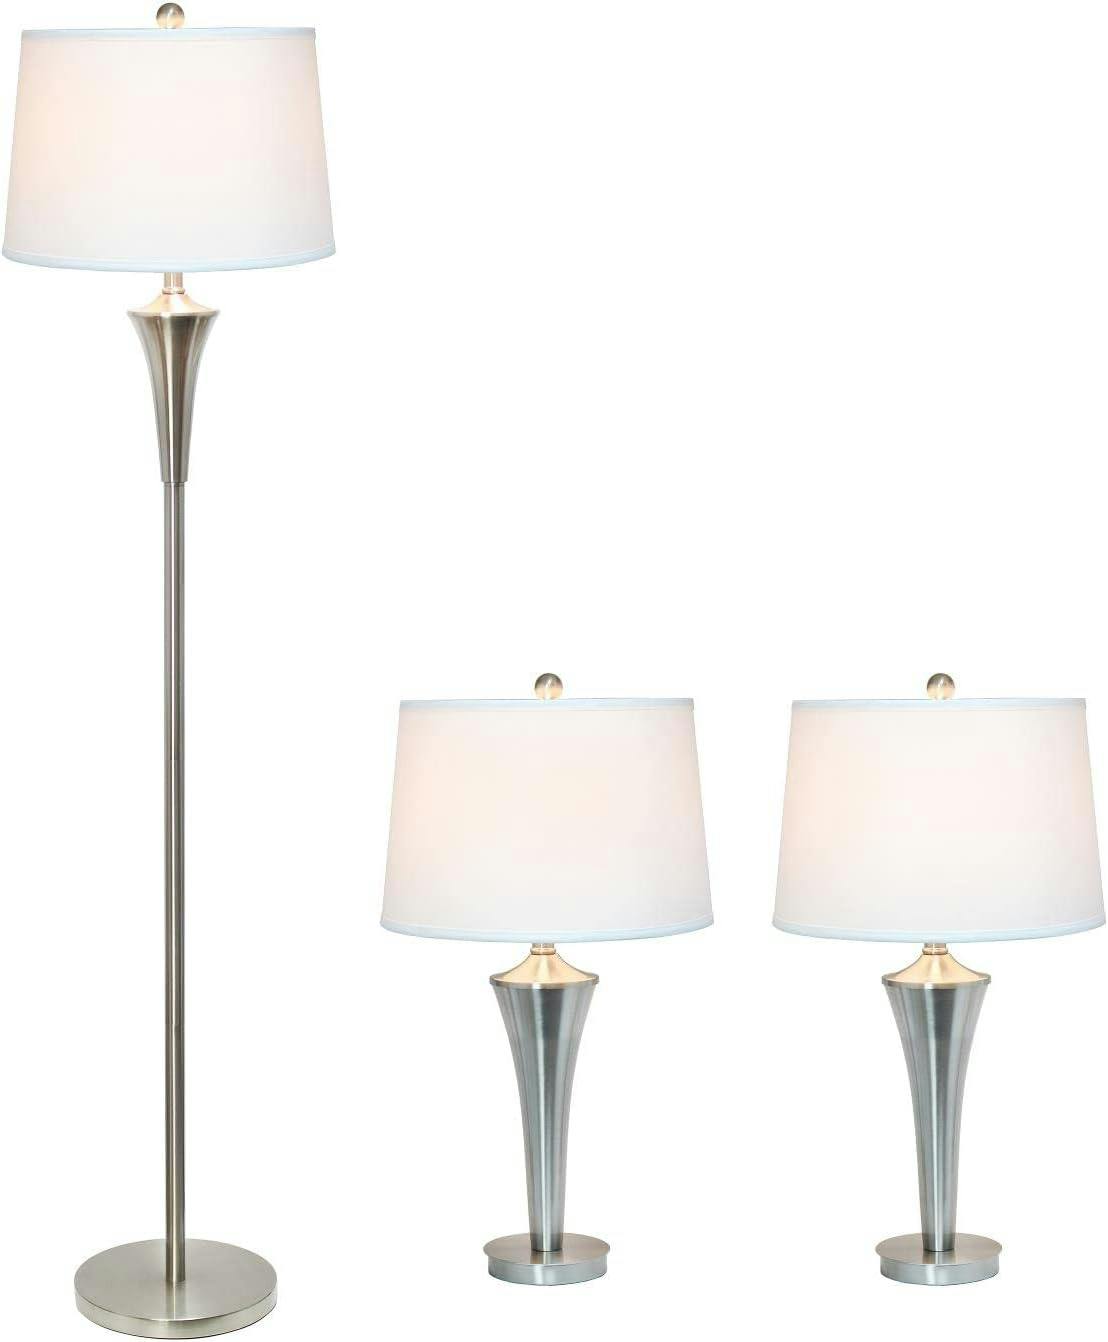 Sleek Modern Brushed Nickel 3-Piece Lamp Set with White Shades